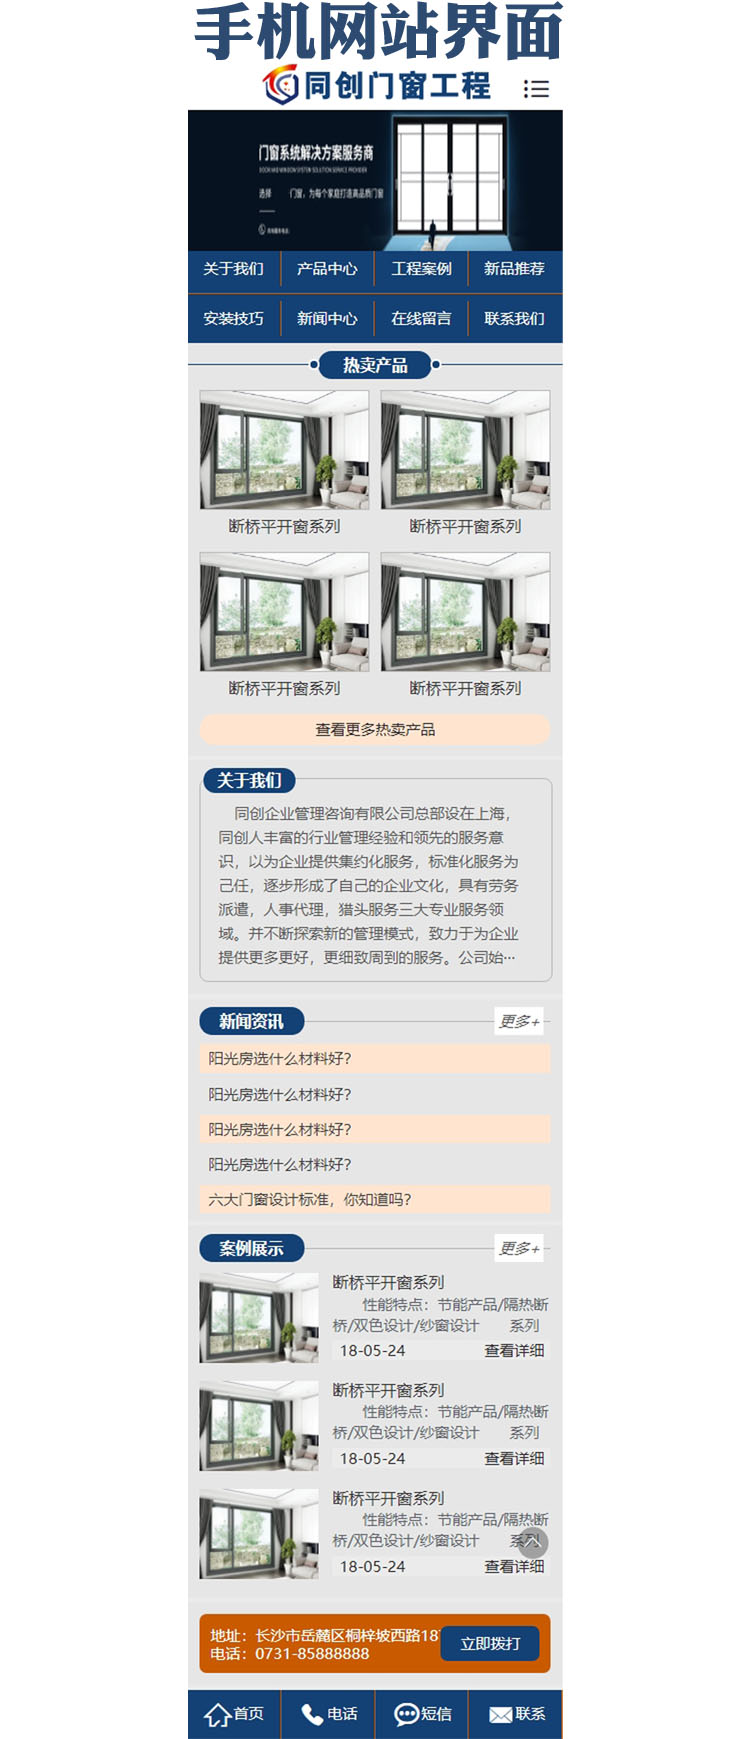 门窗五金工程设备网站源码程序模板-XX153-3